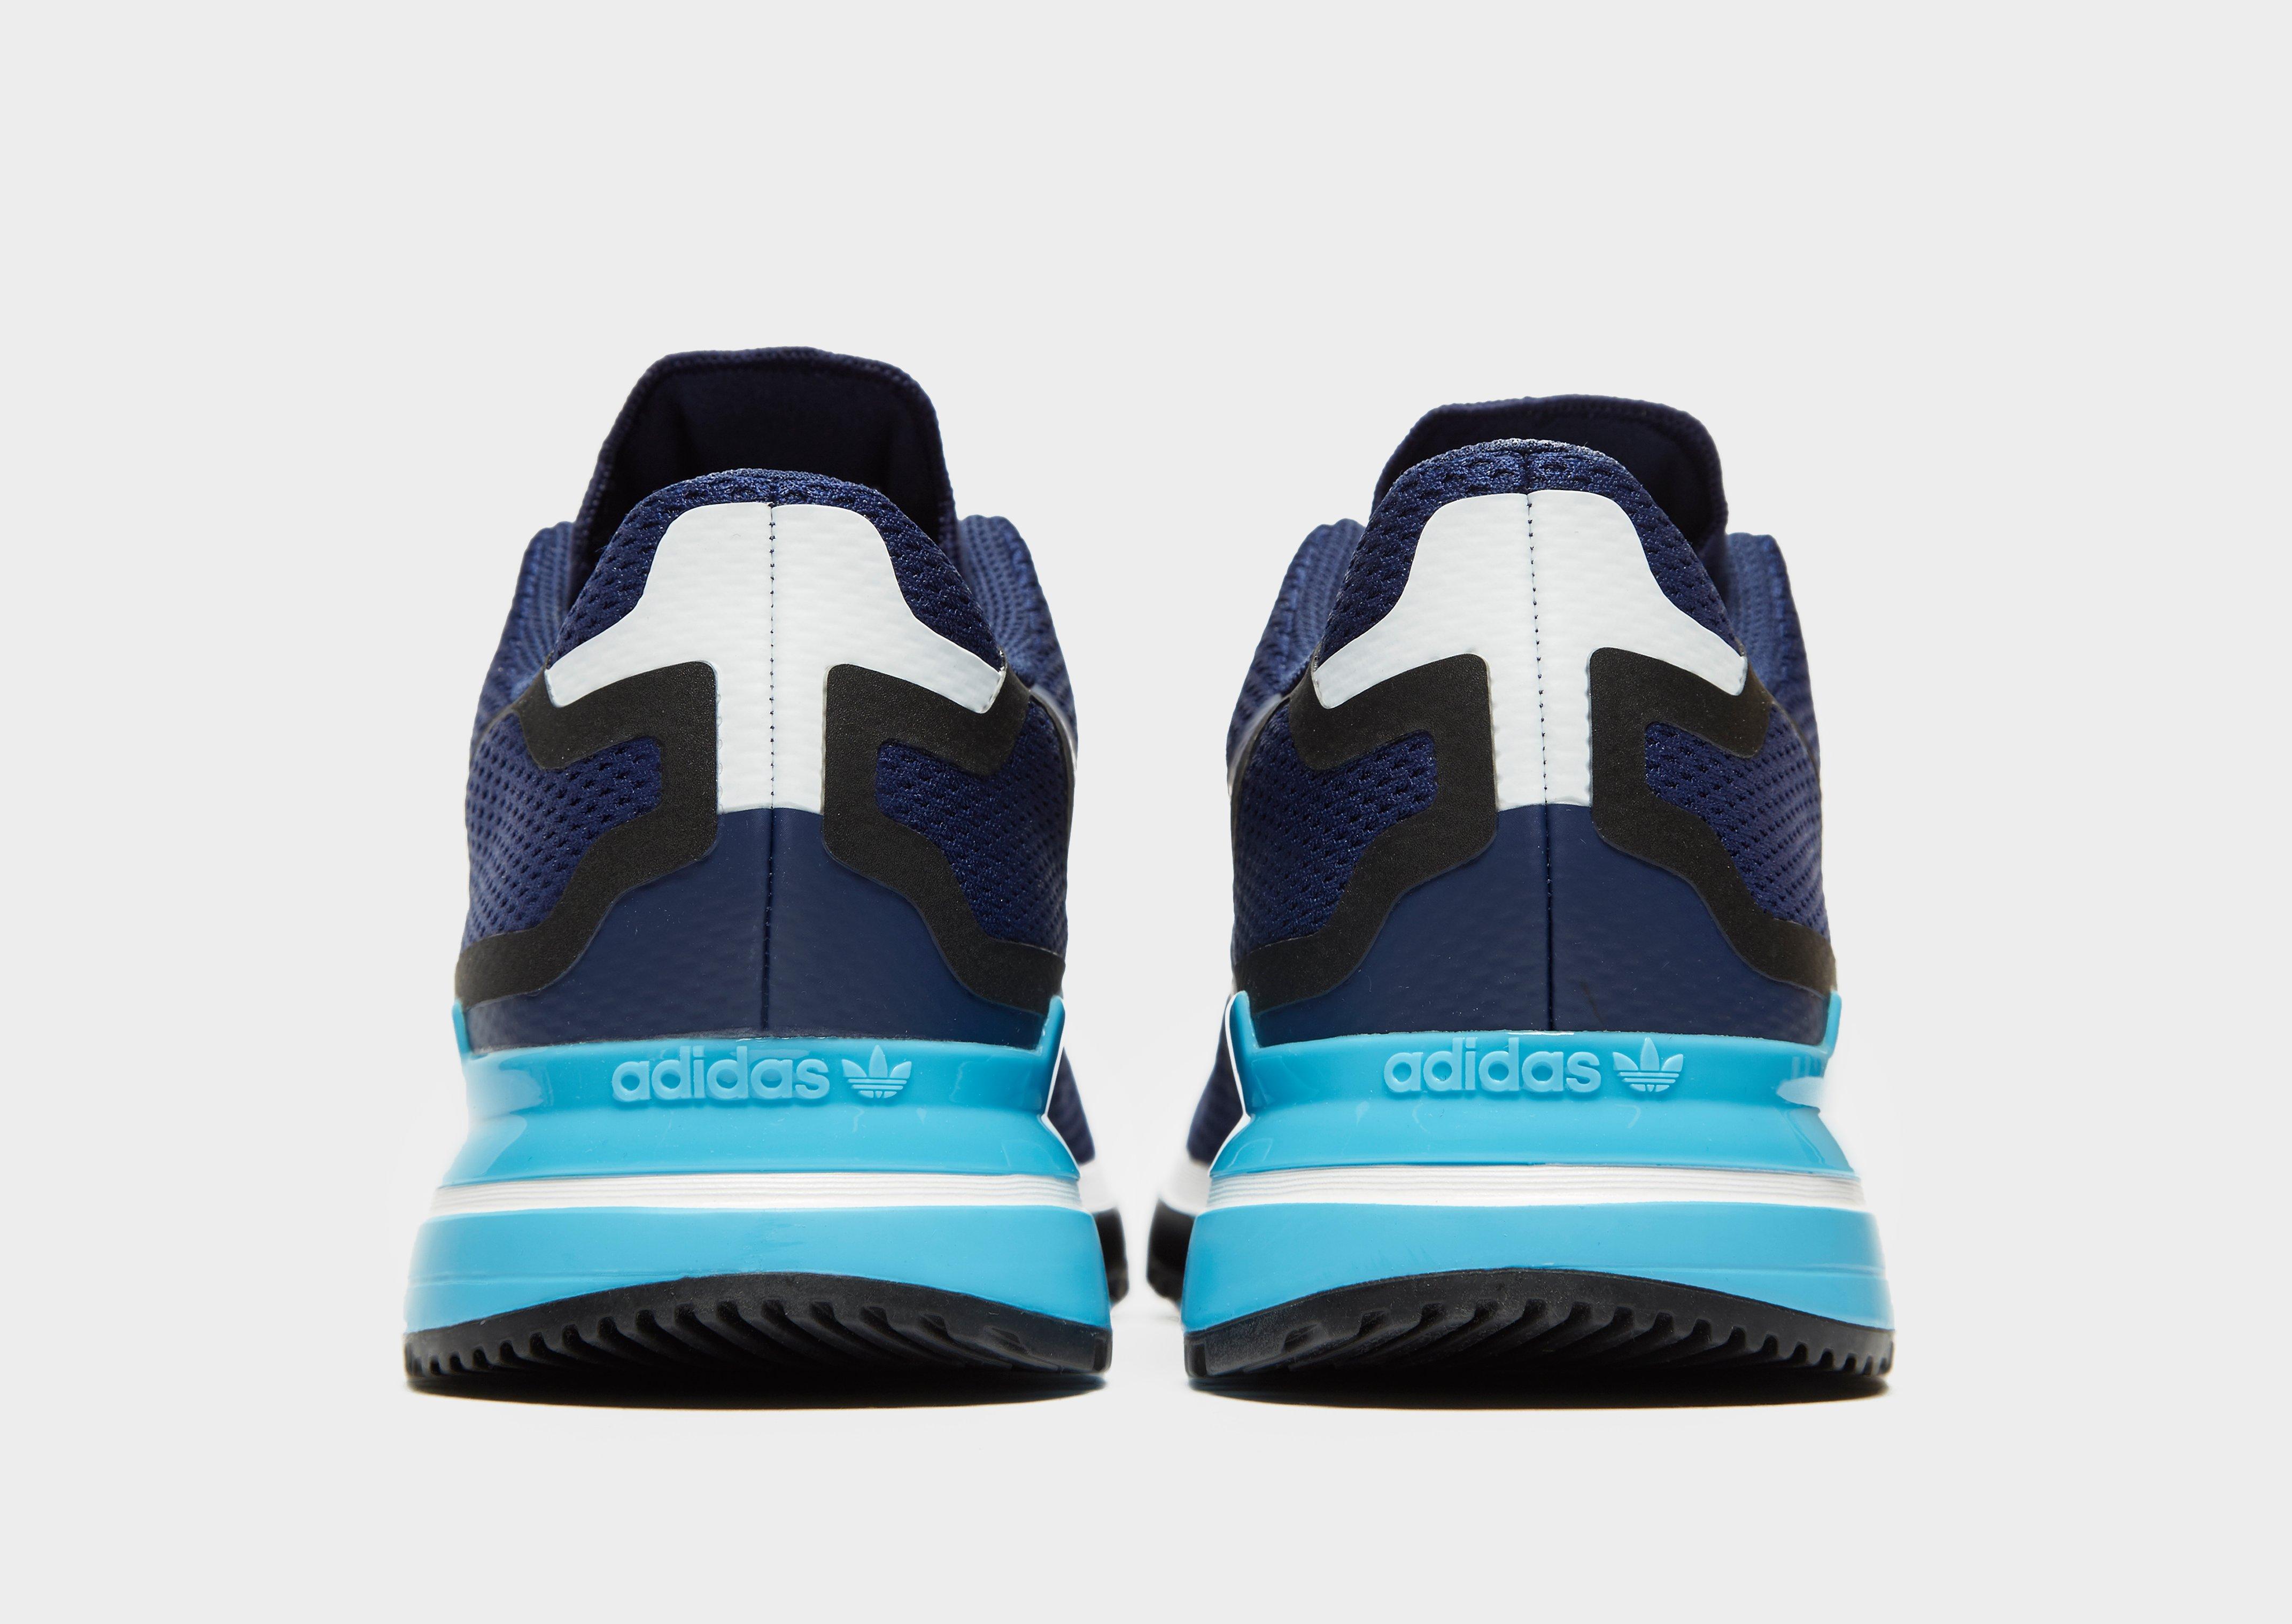 adidas zx 750 enfant bleu